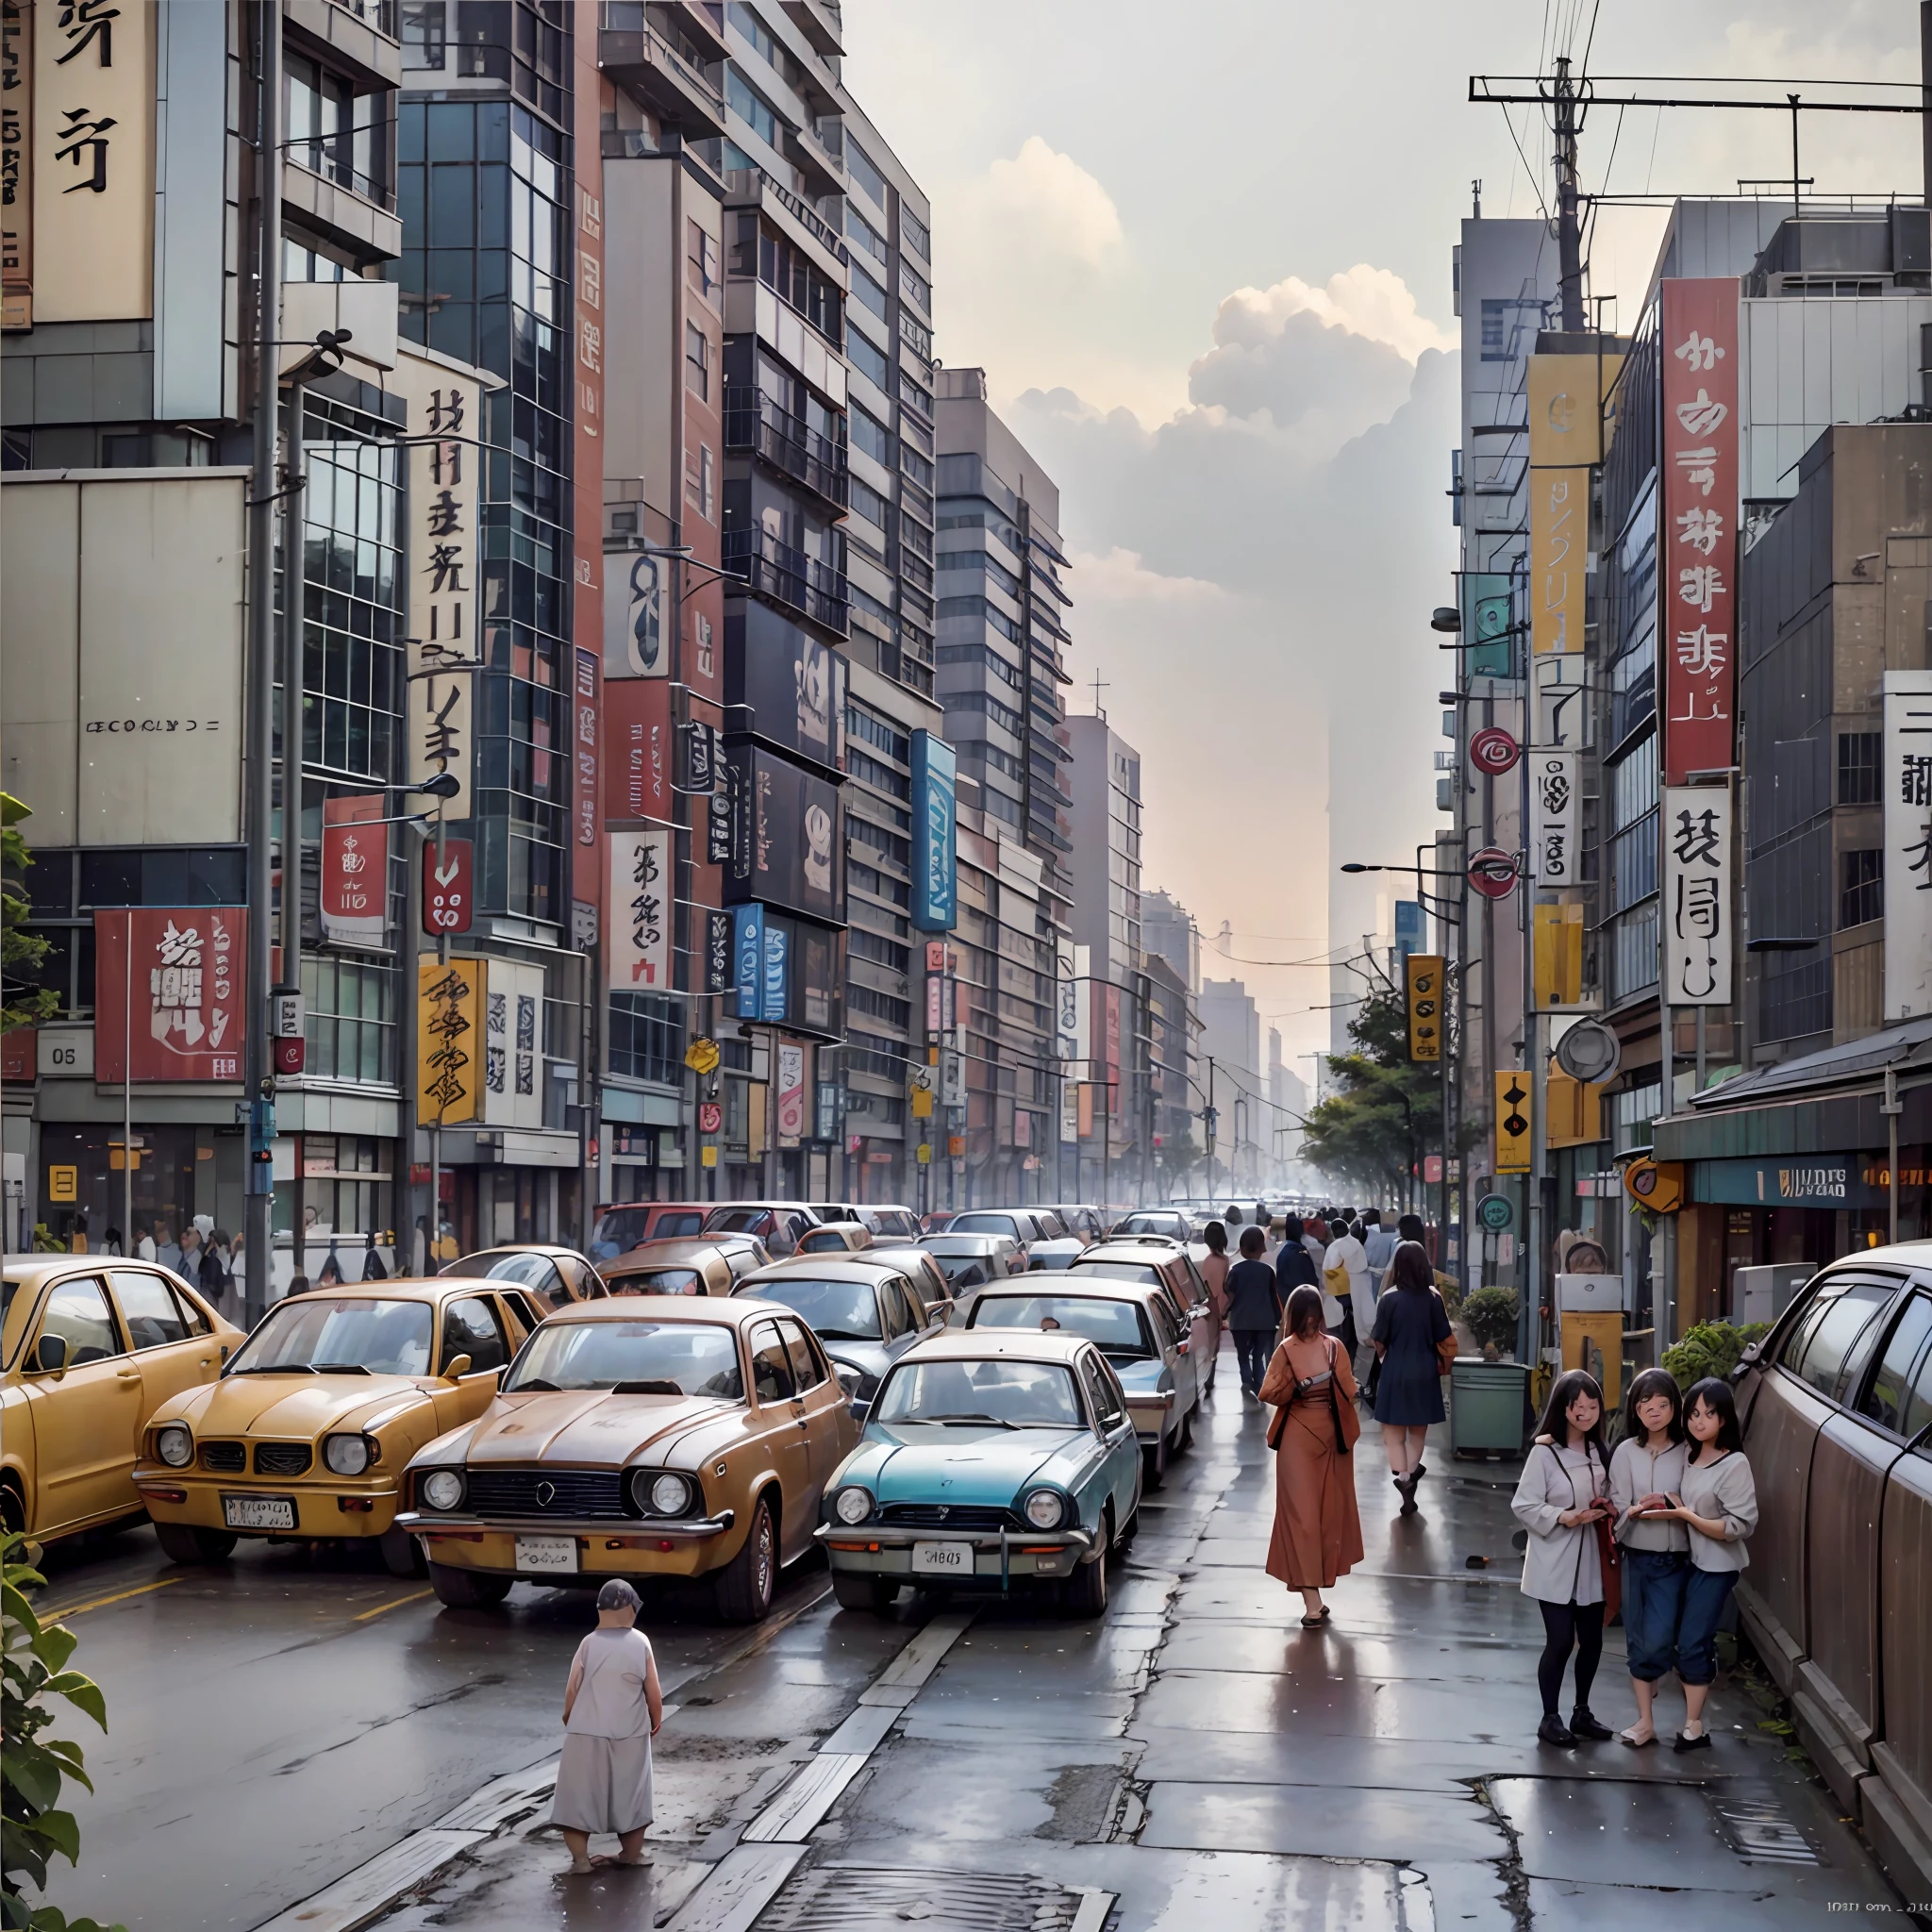 Cidade futurista vista dos anos 1970, Foto de Tóquio, pessoas em 1970, impressão na década de 1970, nostálgico, vintage, foto colorida, foto realista, Alta qualidade de imagem, nublado, sujo, ferrugem, expressão ultra-realista, --auto --s2